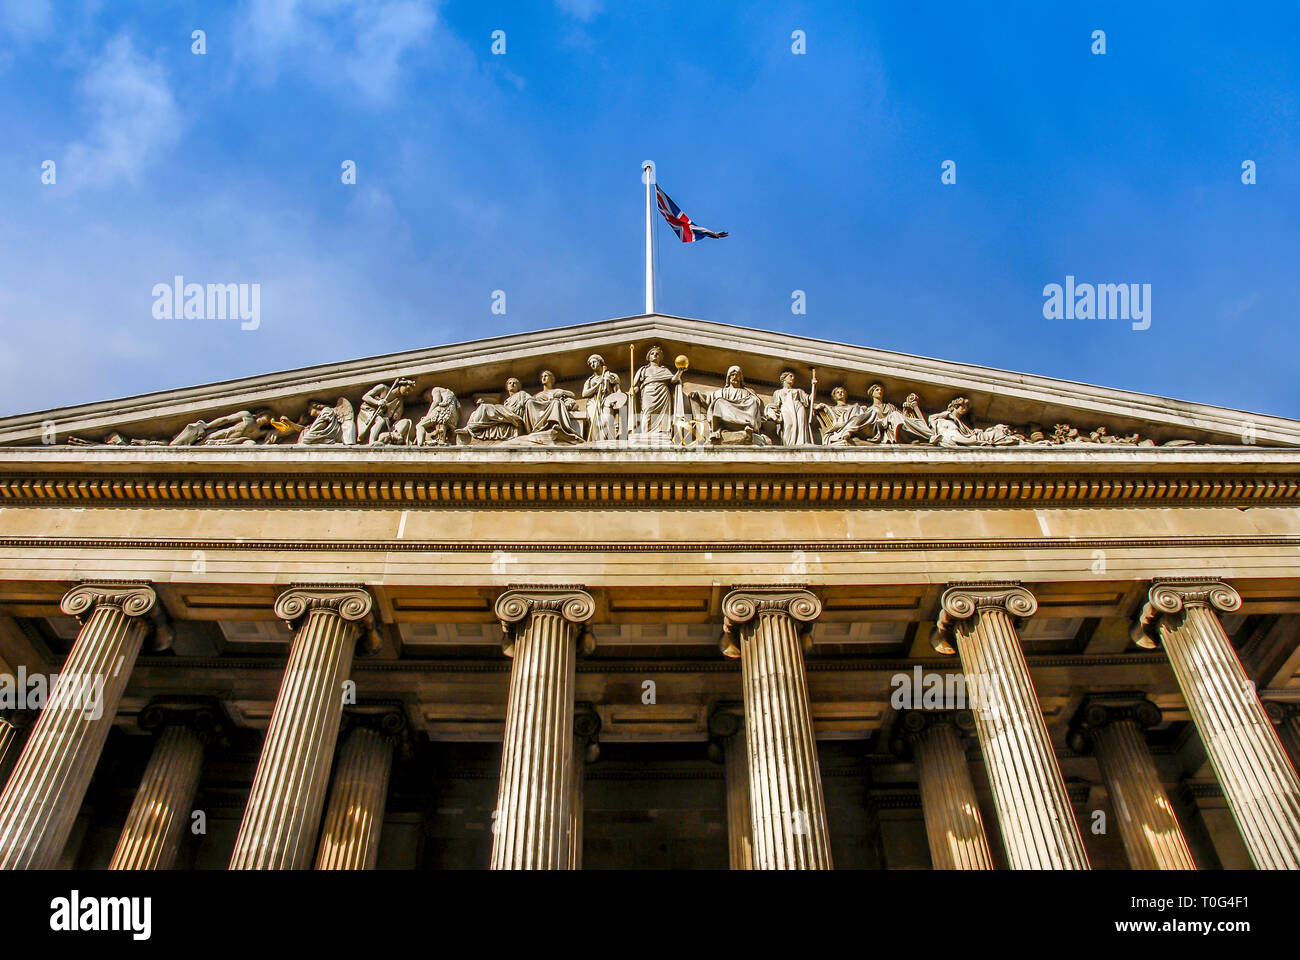 London, UK, 1 November 2012: British Museum Stock Photo